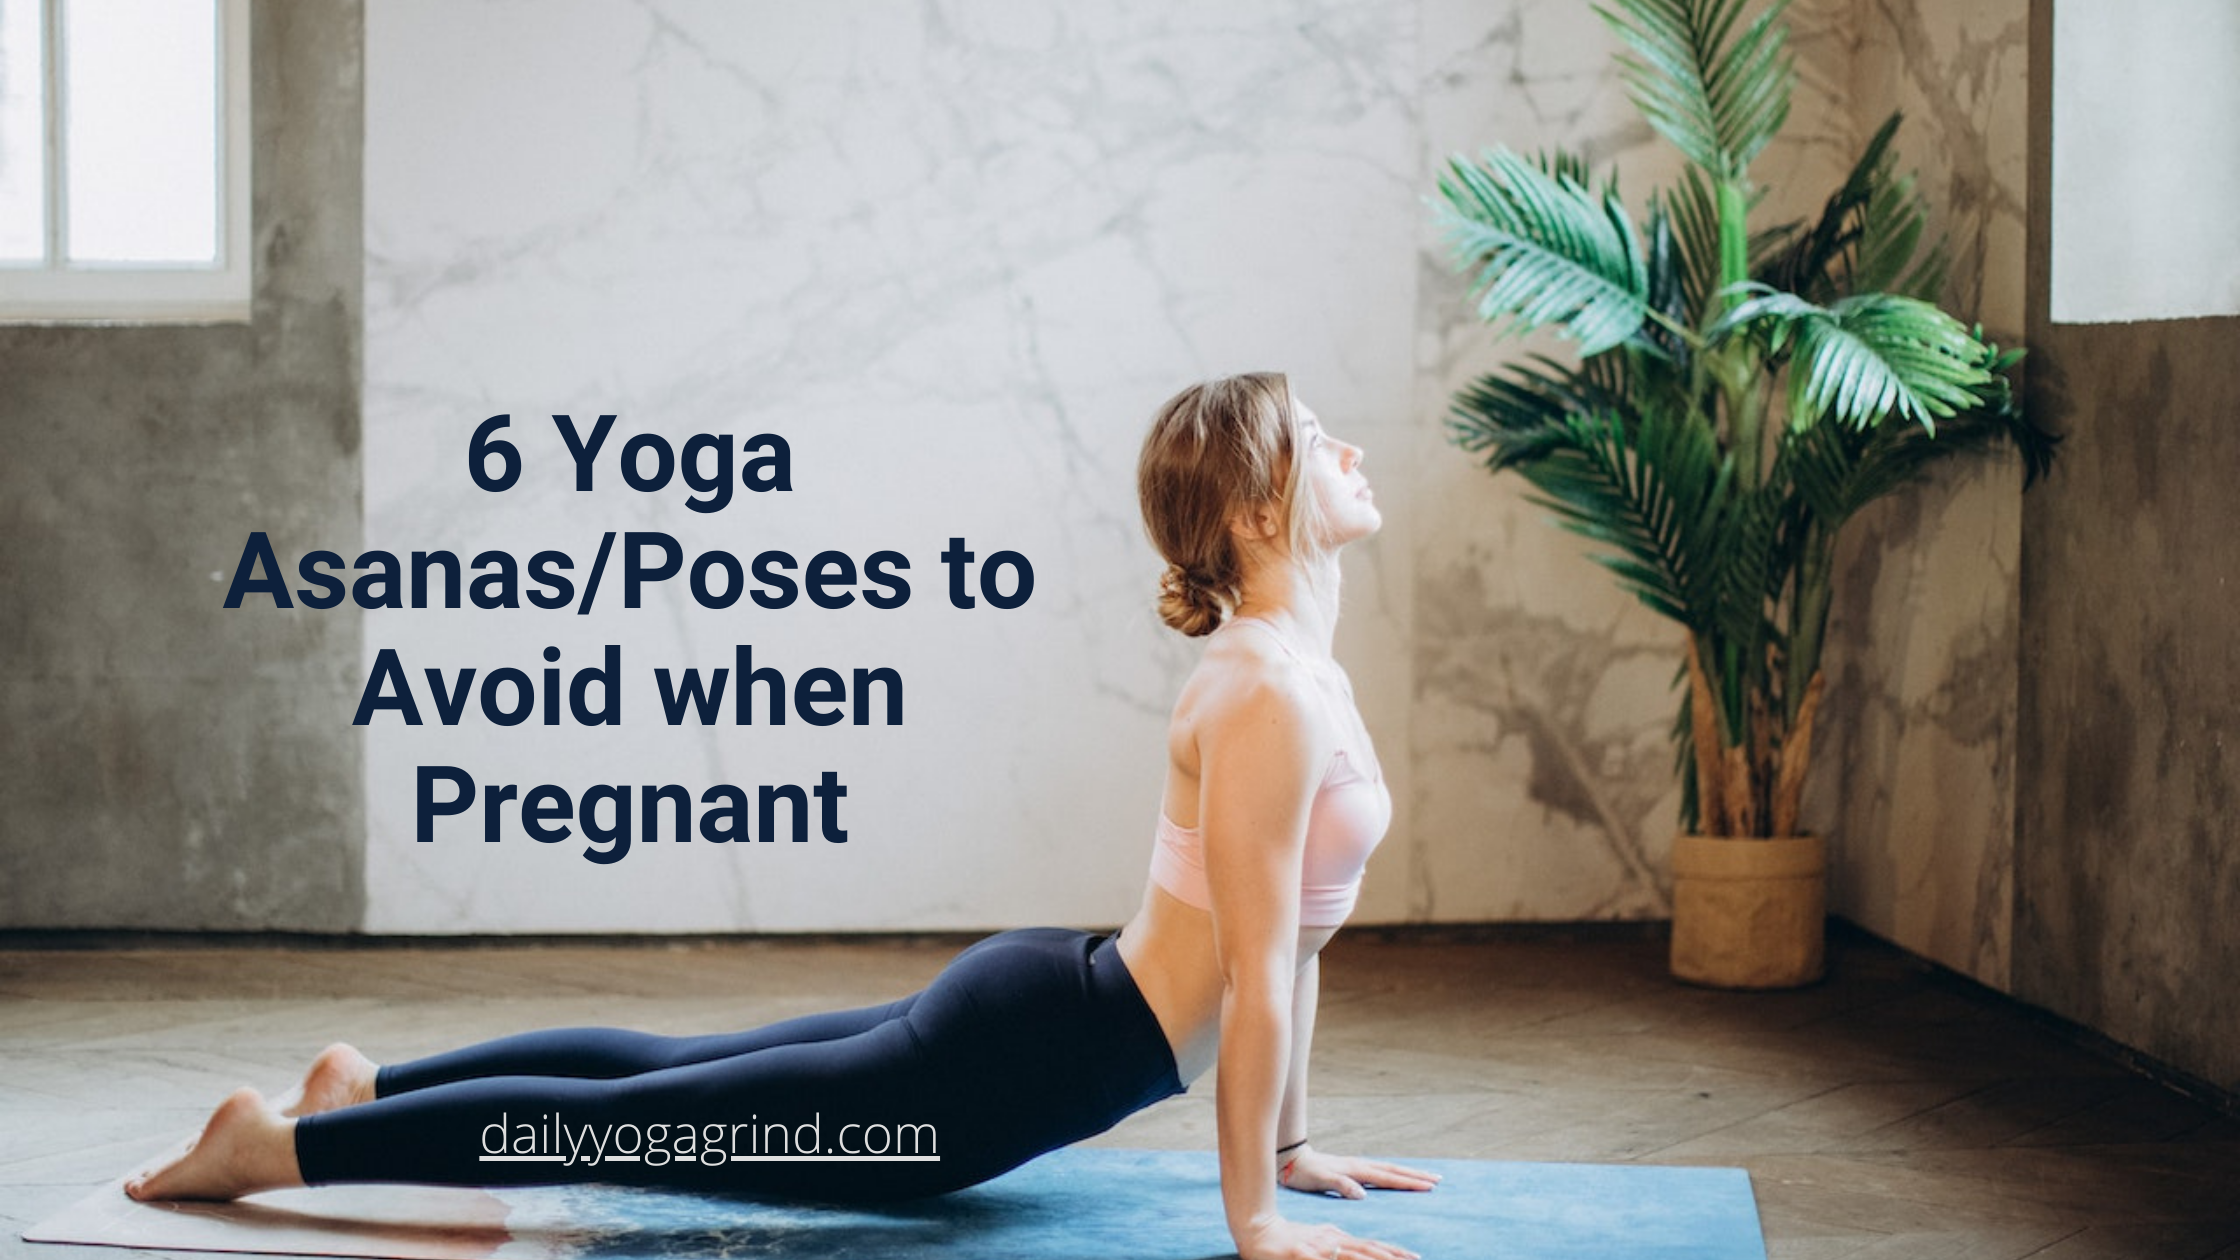 6 Yoga Asanas/Poses to Avoid when Pregnant